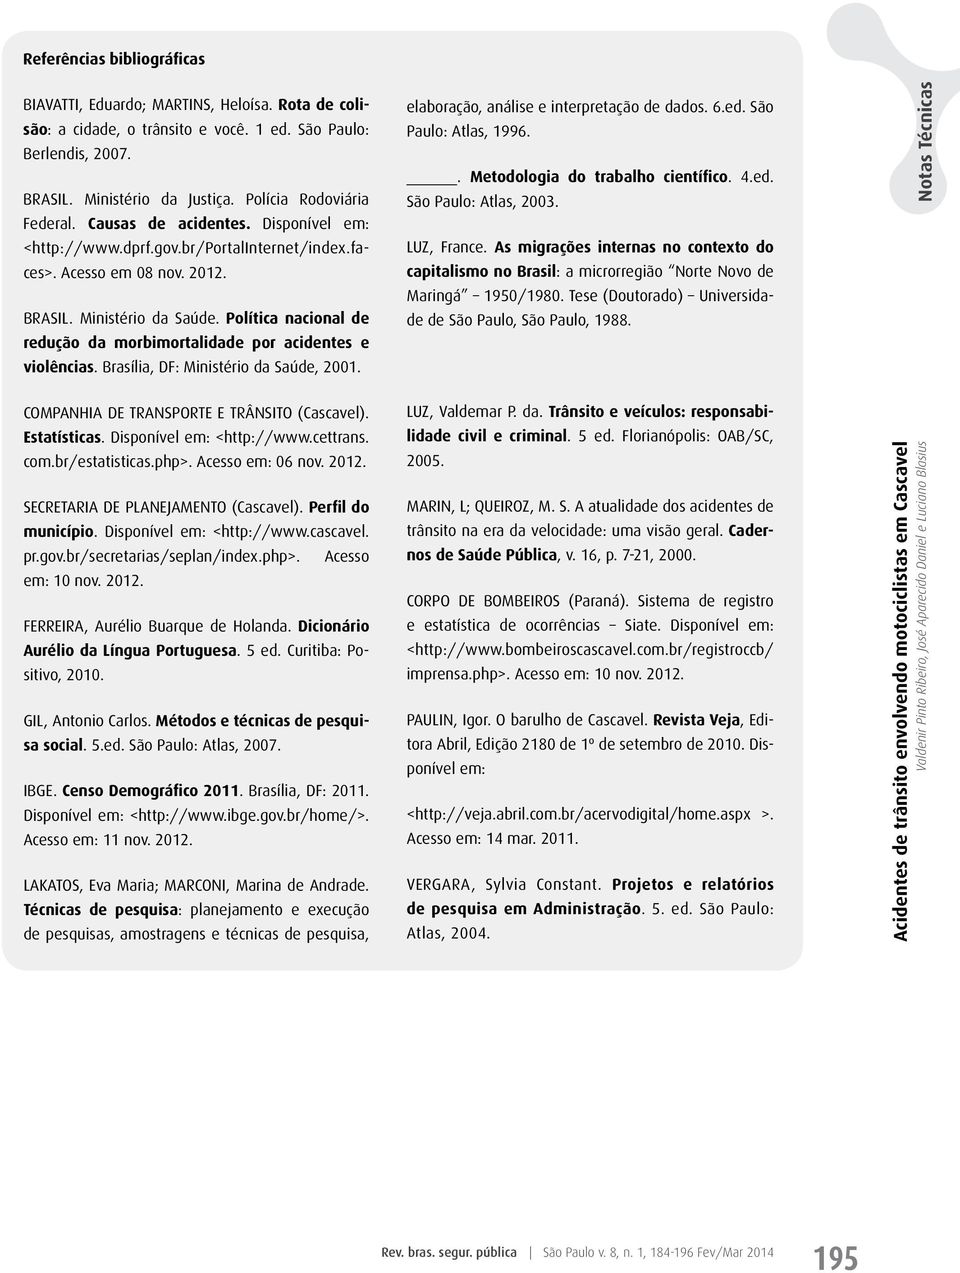 Política nacional de redução da morbimortalidade por acidentes e violências. Brasília, DF: Ministério da Saúde, 2001. COMPANHIA DE TRANSPORTE E TRÂNSITO (Cascavel). Estatísticas.